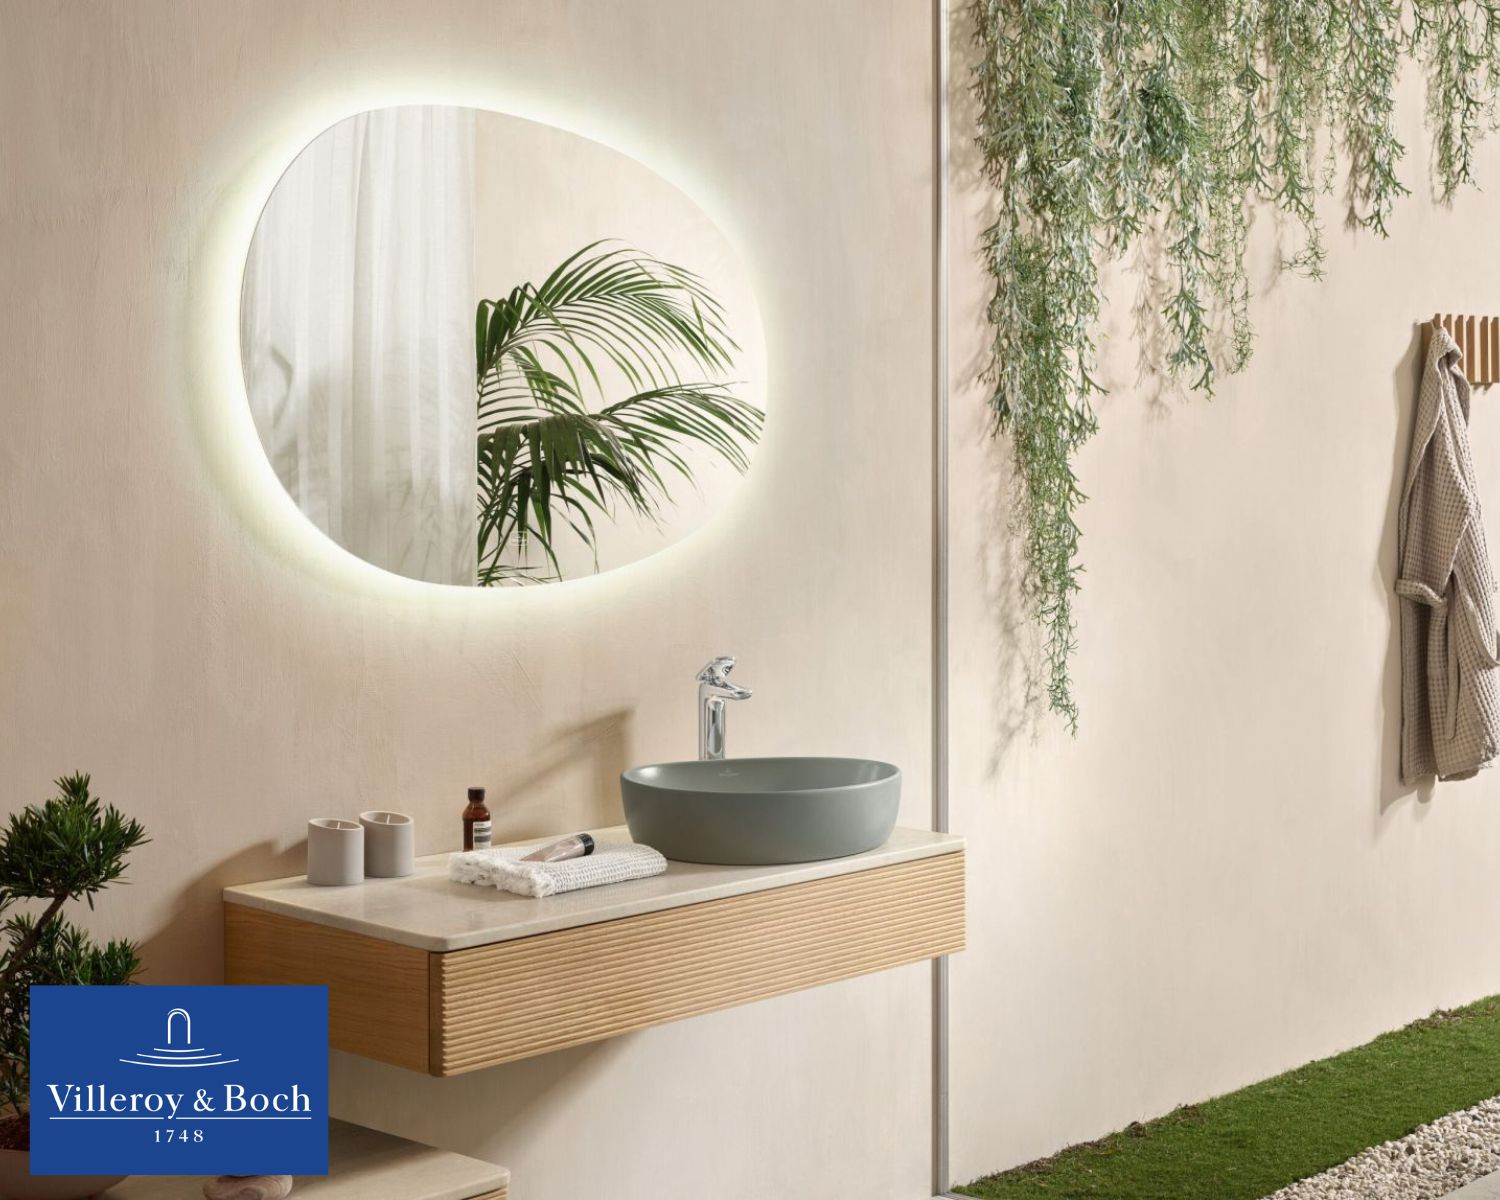 łazienka w stylu egzotycznym, tropikalna łazienka, łazienka w stylu tropikalnym, tropikalny styl, łazienka z motywem liści, łazienka bambus inspiracje 